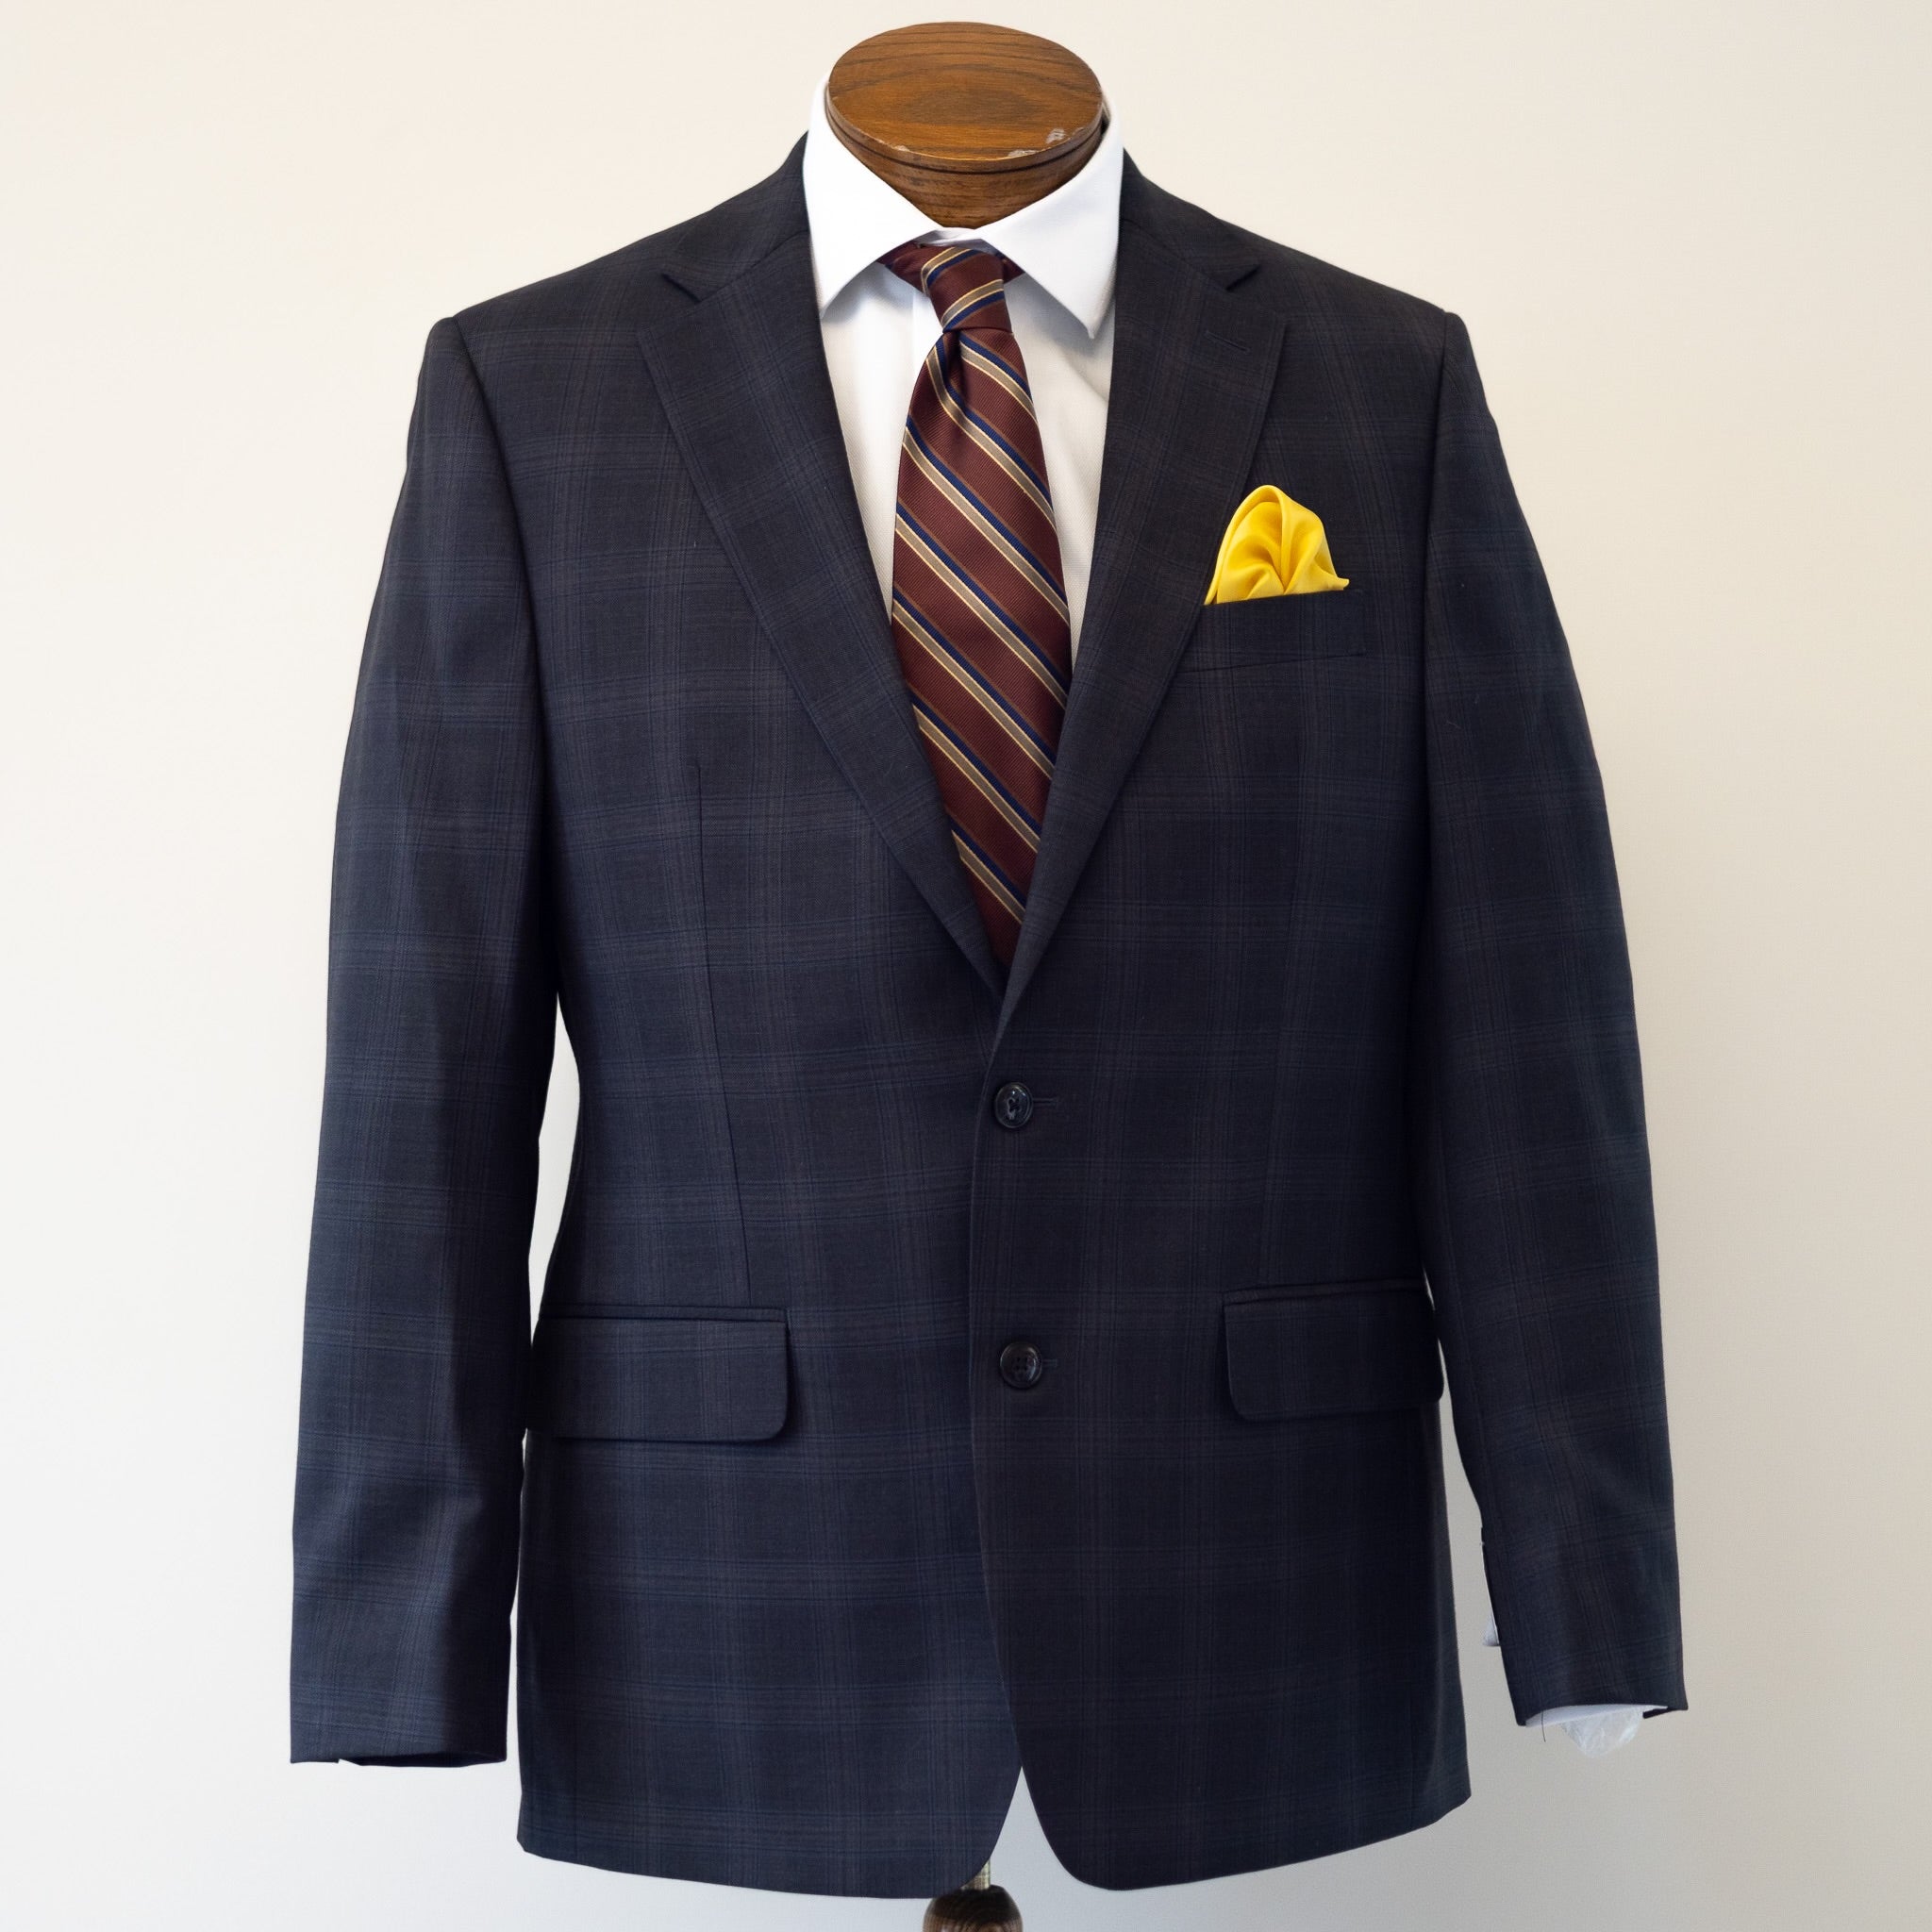 Rich Char/Brown Plaid Suit